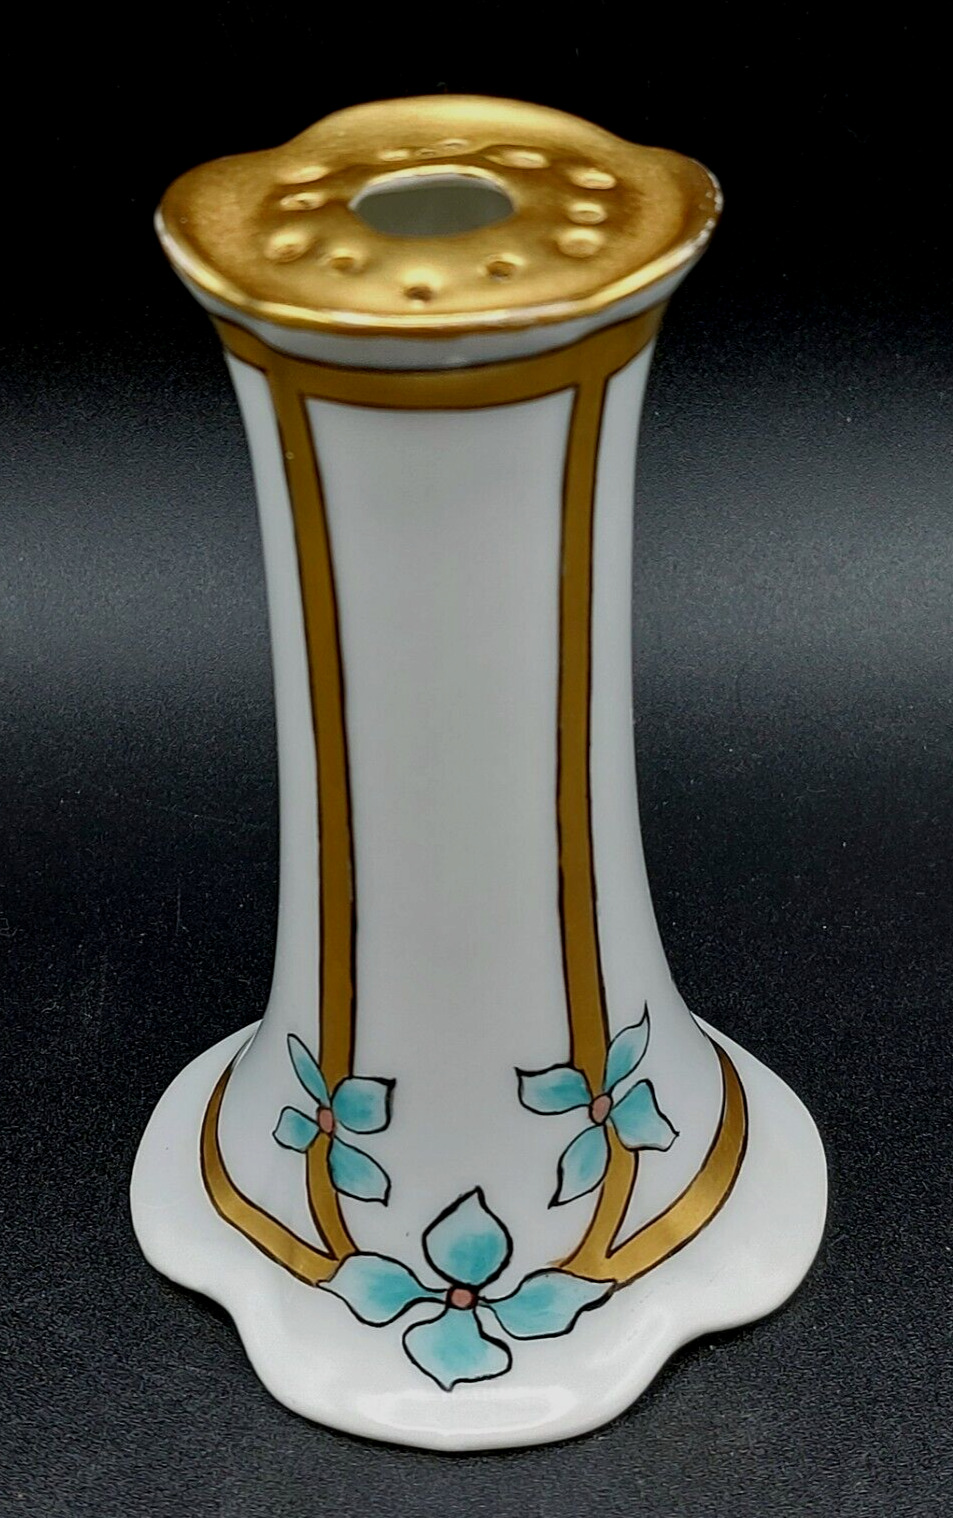 German Bavarian Porcelain 4